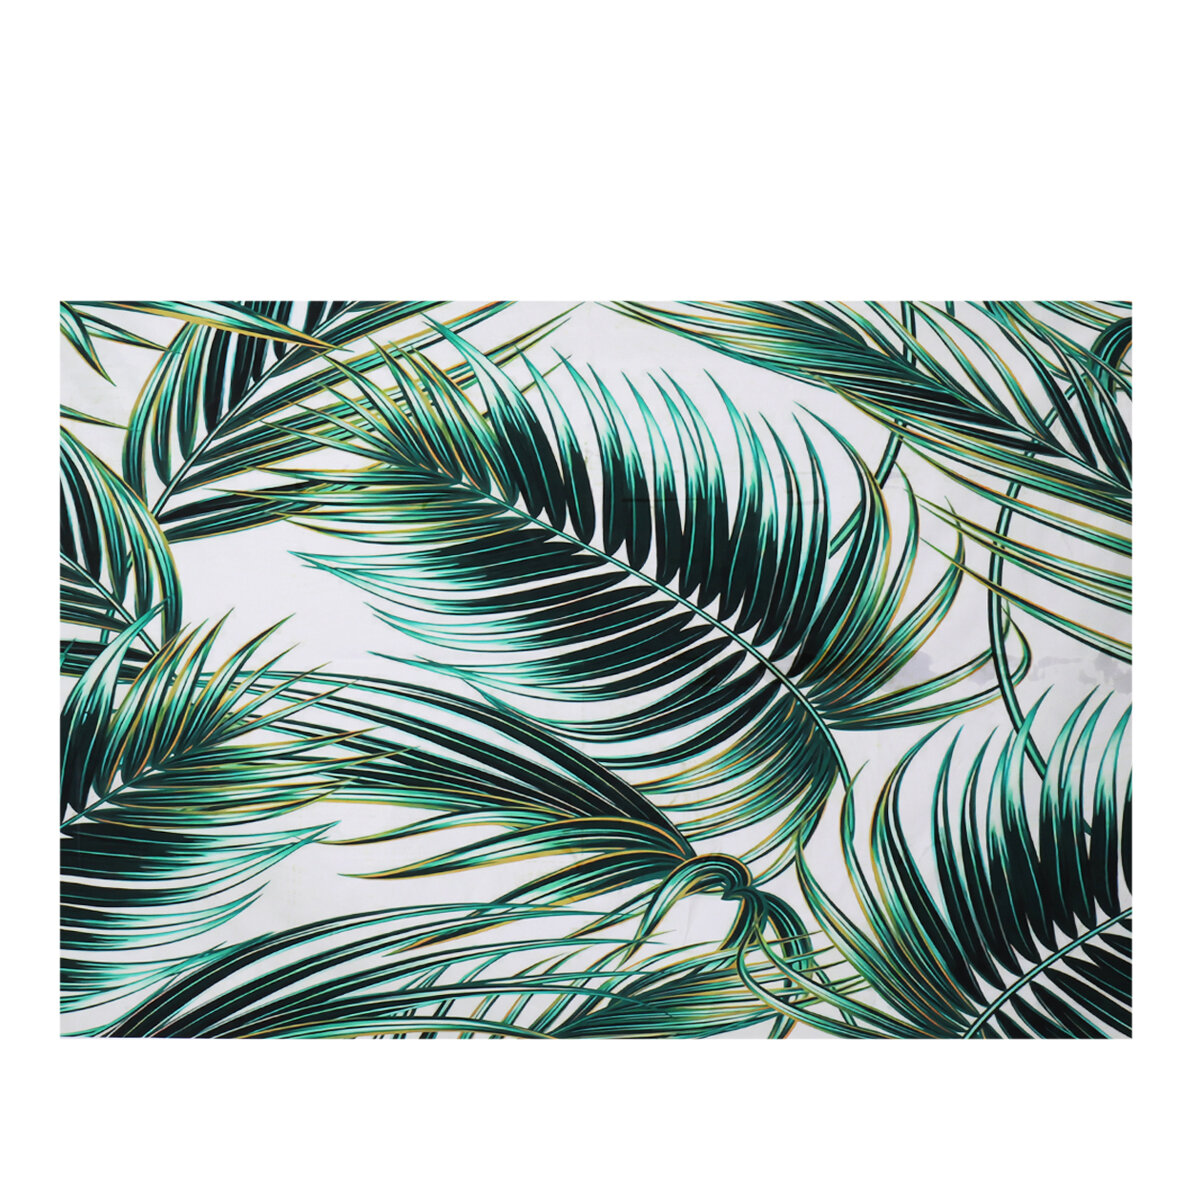 Bos achtergrond groene tropische bladeren Vinyl achtergronden palmbomen en Monstera fotografie achtergrond voor interieur kamer behang zomerkamp fotostudio rekwisieten